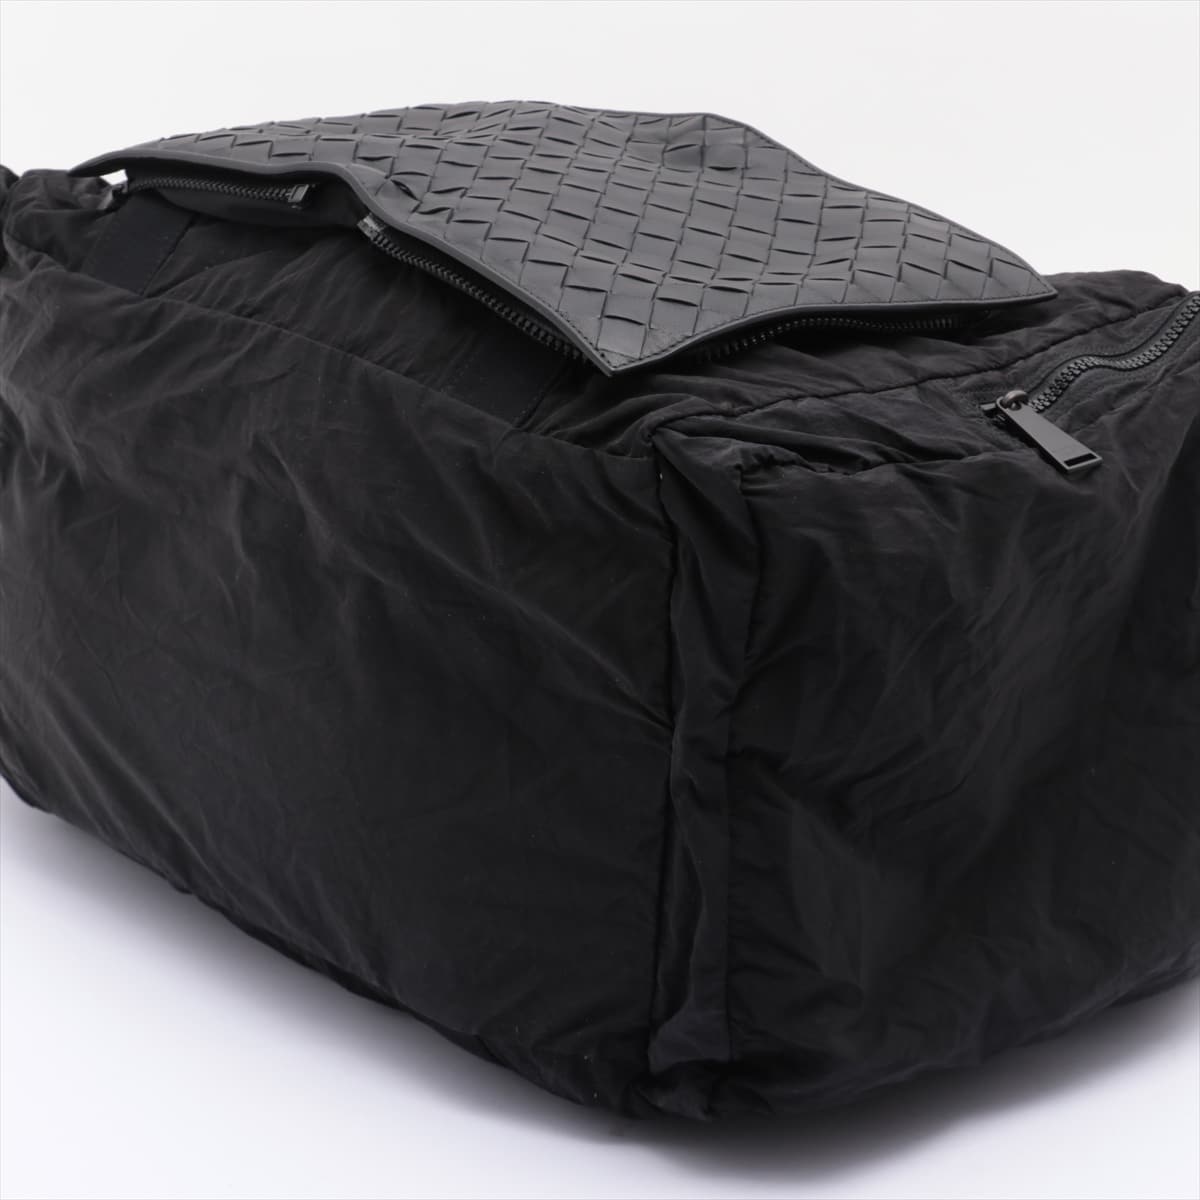 Bottega Veneta Intrecciato Nylon & leather 2way handbag Black